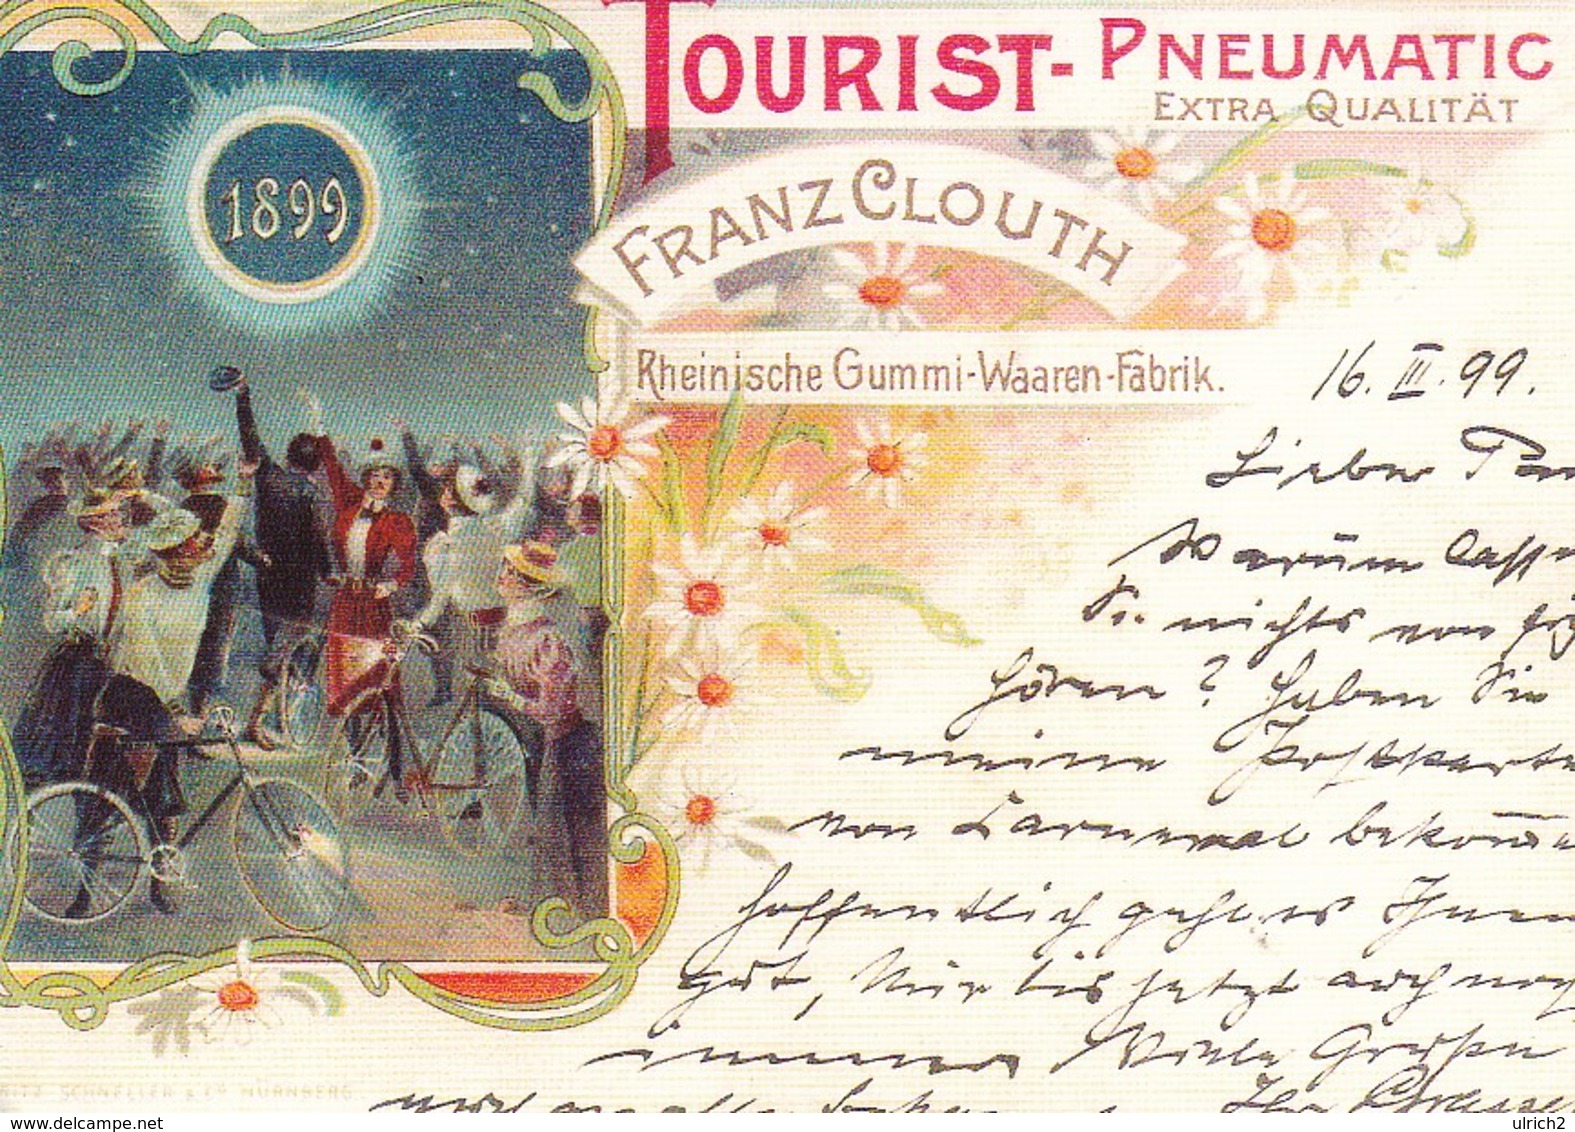 AK Werbung Für Clouth Aus Dem Jahre 1899 - Rheinische Gummi-Waaren-Fabrik - Repro (40553) - Werbepostkarten